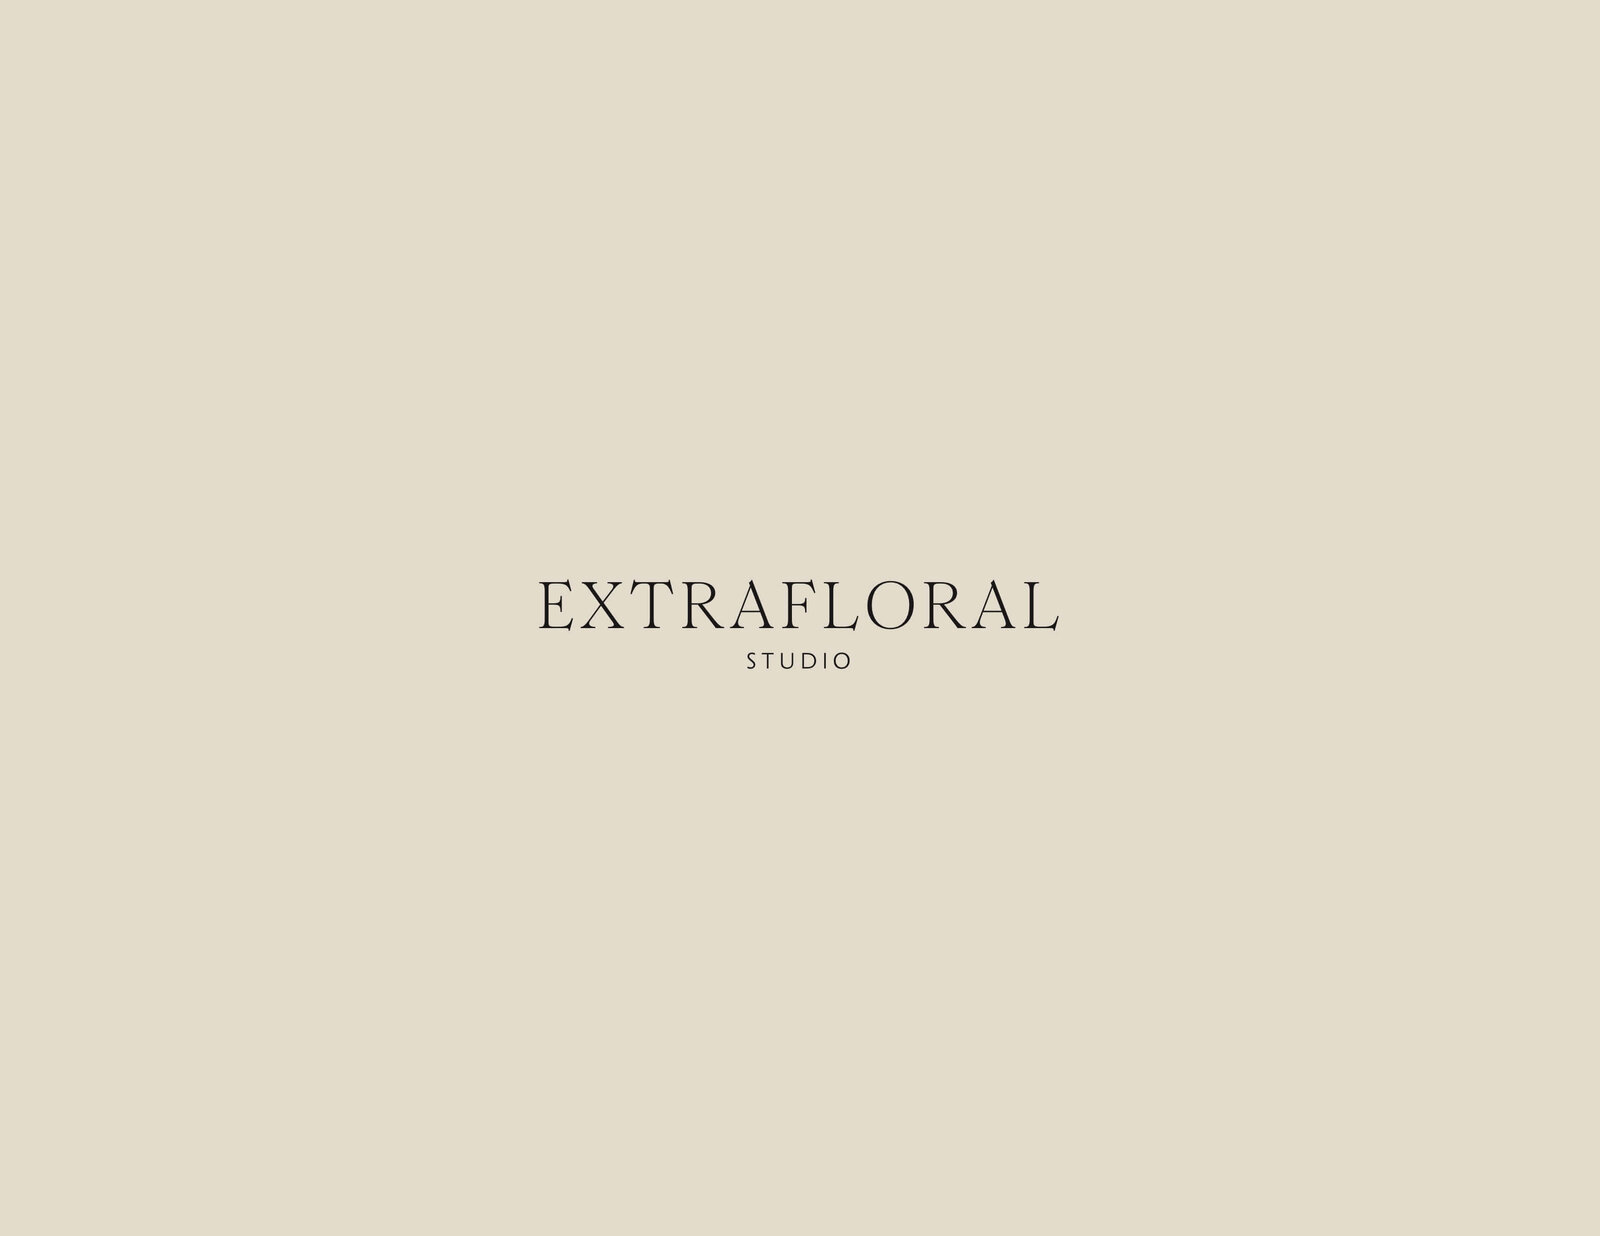 Extrafloral-Branding-Design-by-Letter-South-design-sprint-EF45